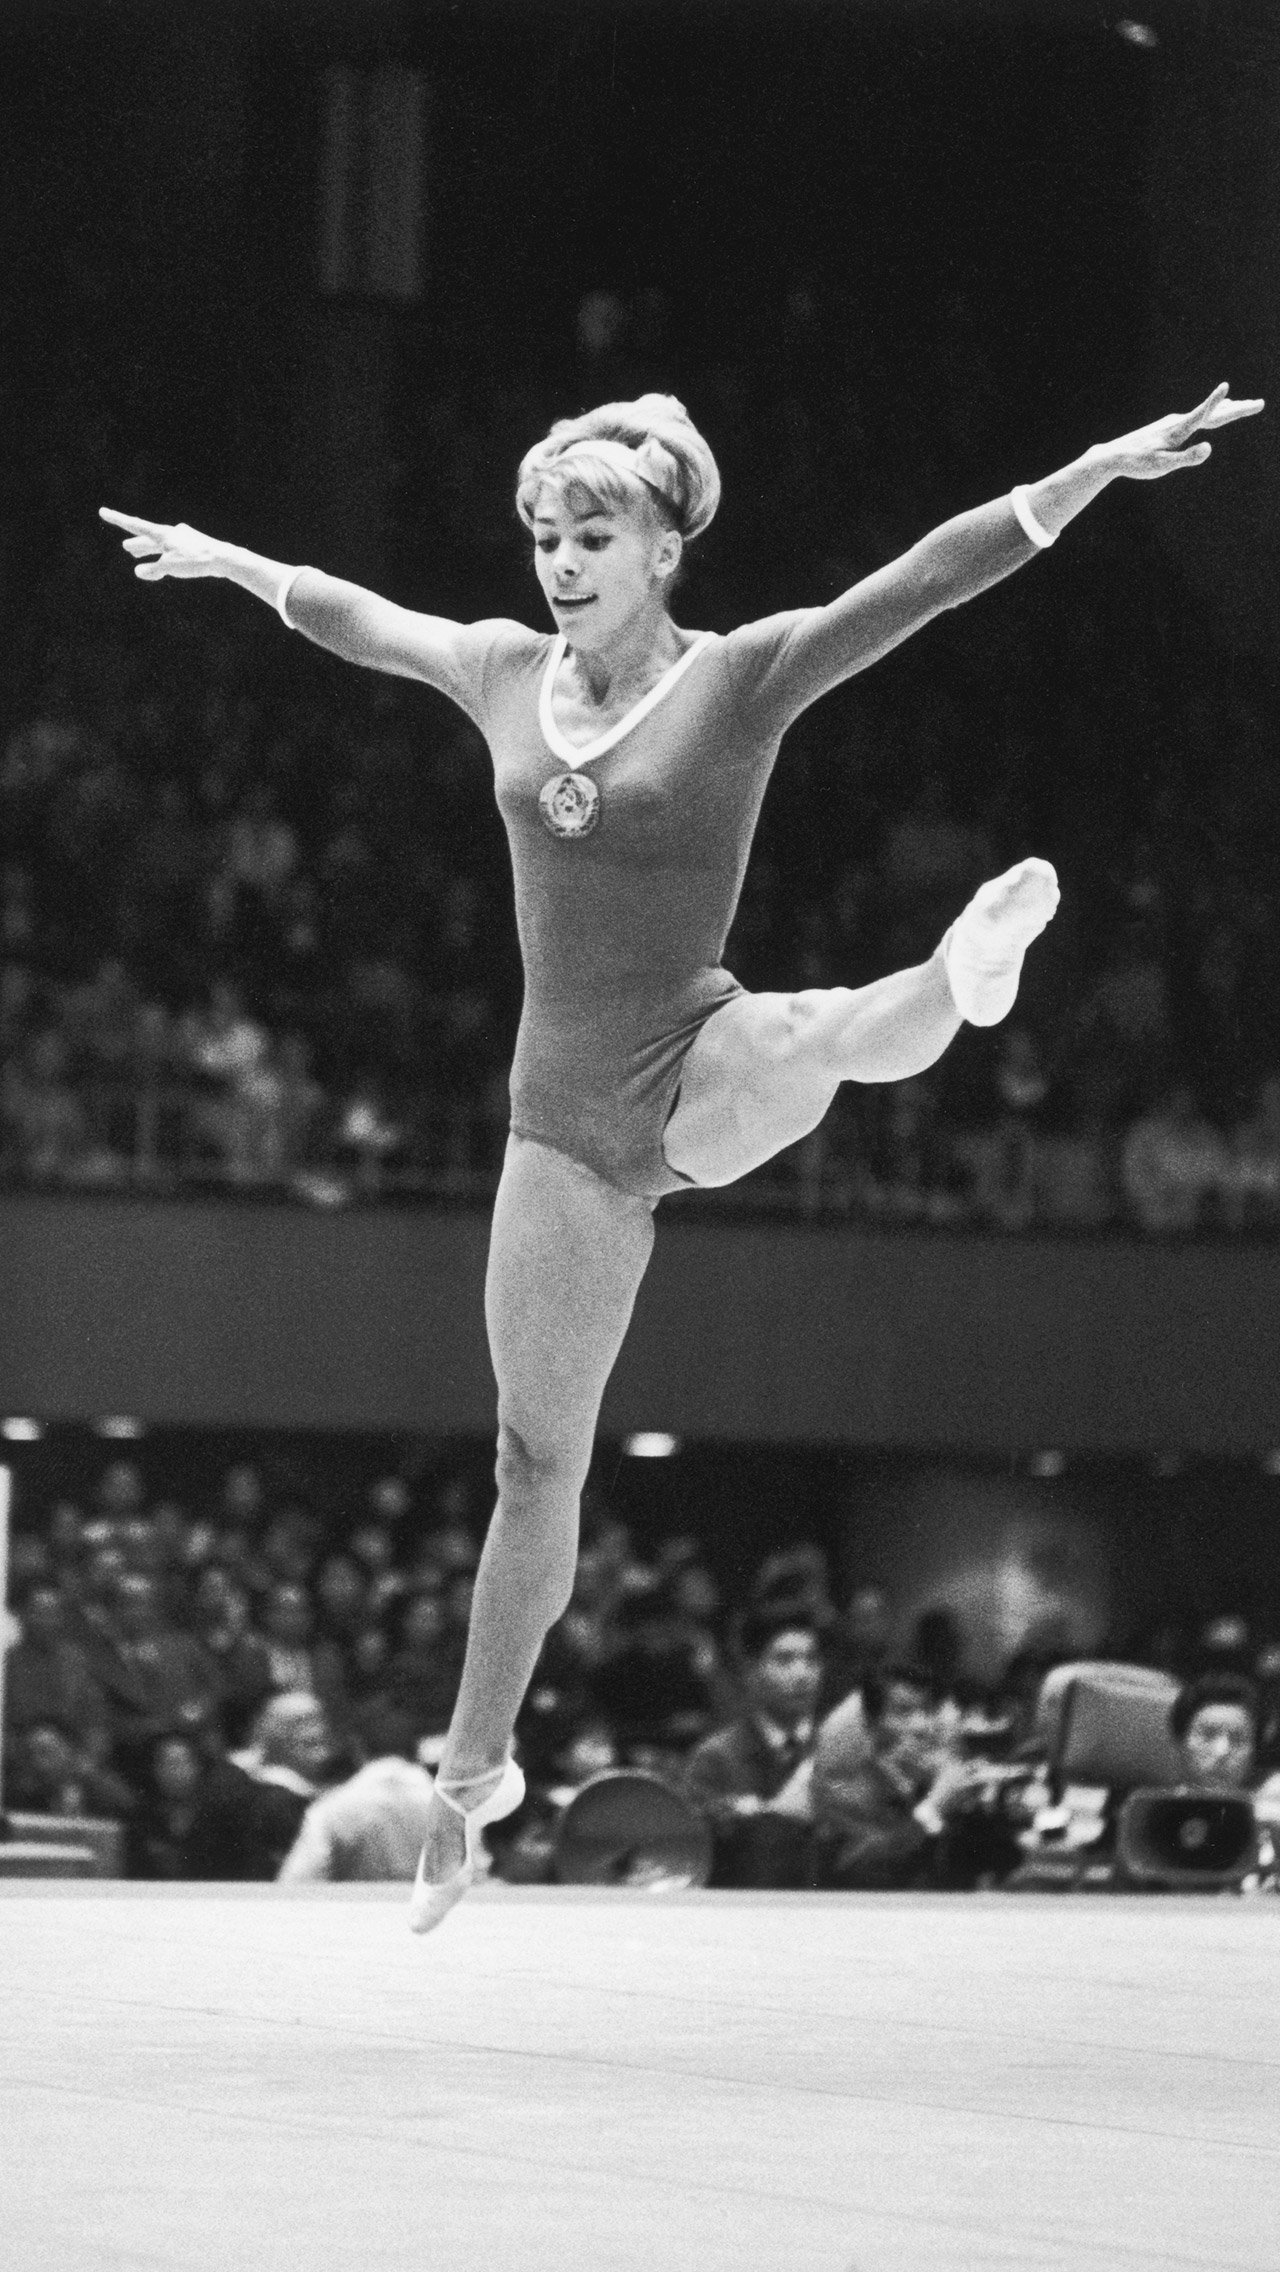 К сожалению, ещё ни один россиянин не приблизился к достижениям легендарной советской гимнастки Ларисы Латыниной. С трёх Олимпиад спортсменка увезла 9 золотых медалей, 5 серебряных и 4 бронзовых.